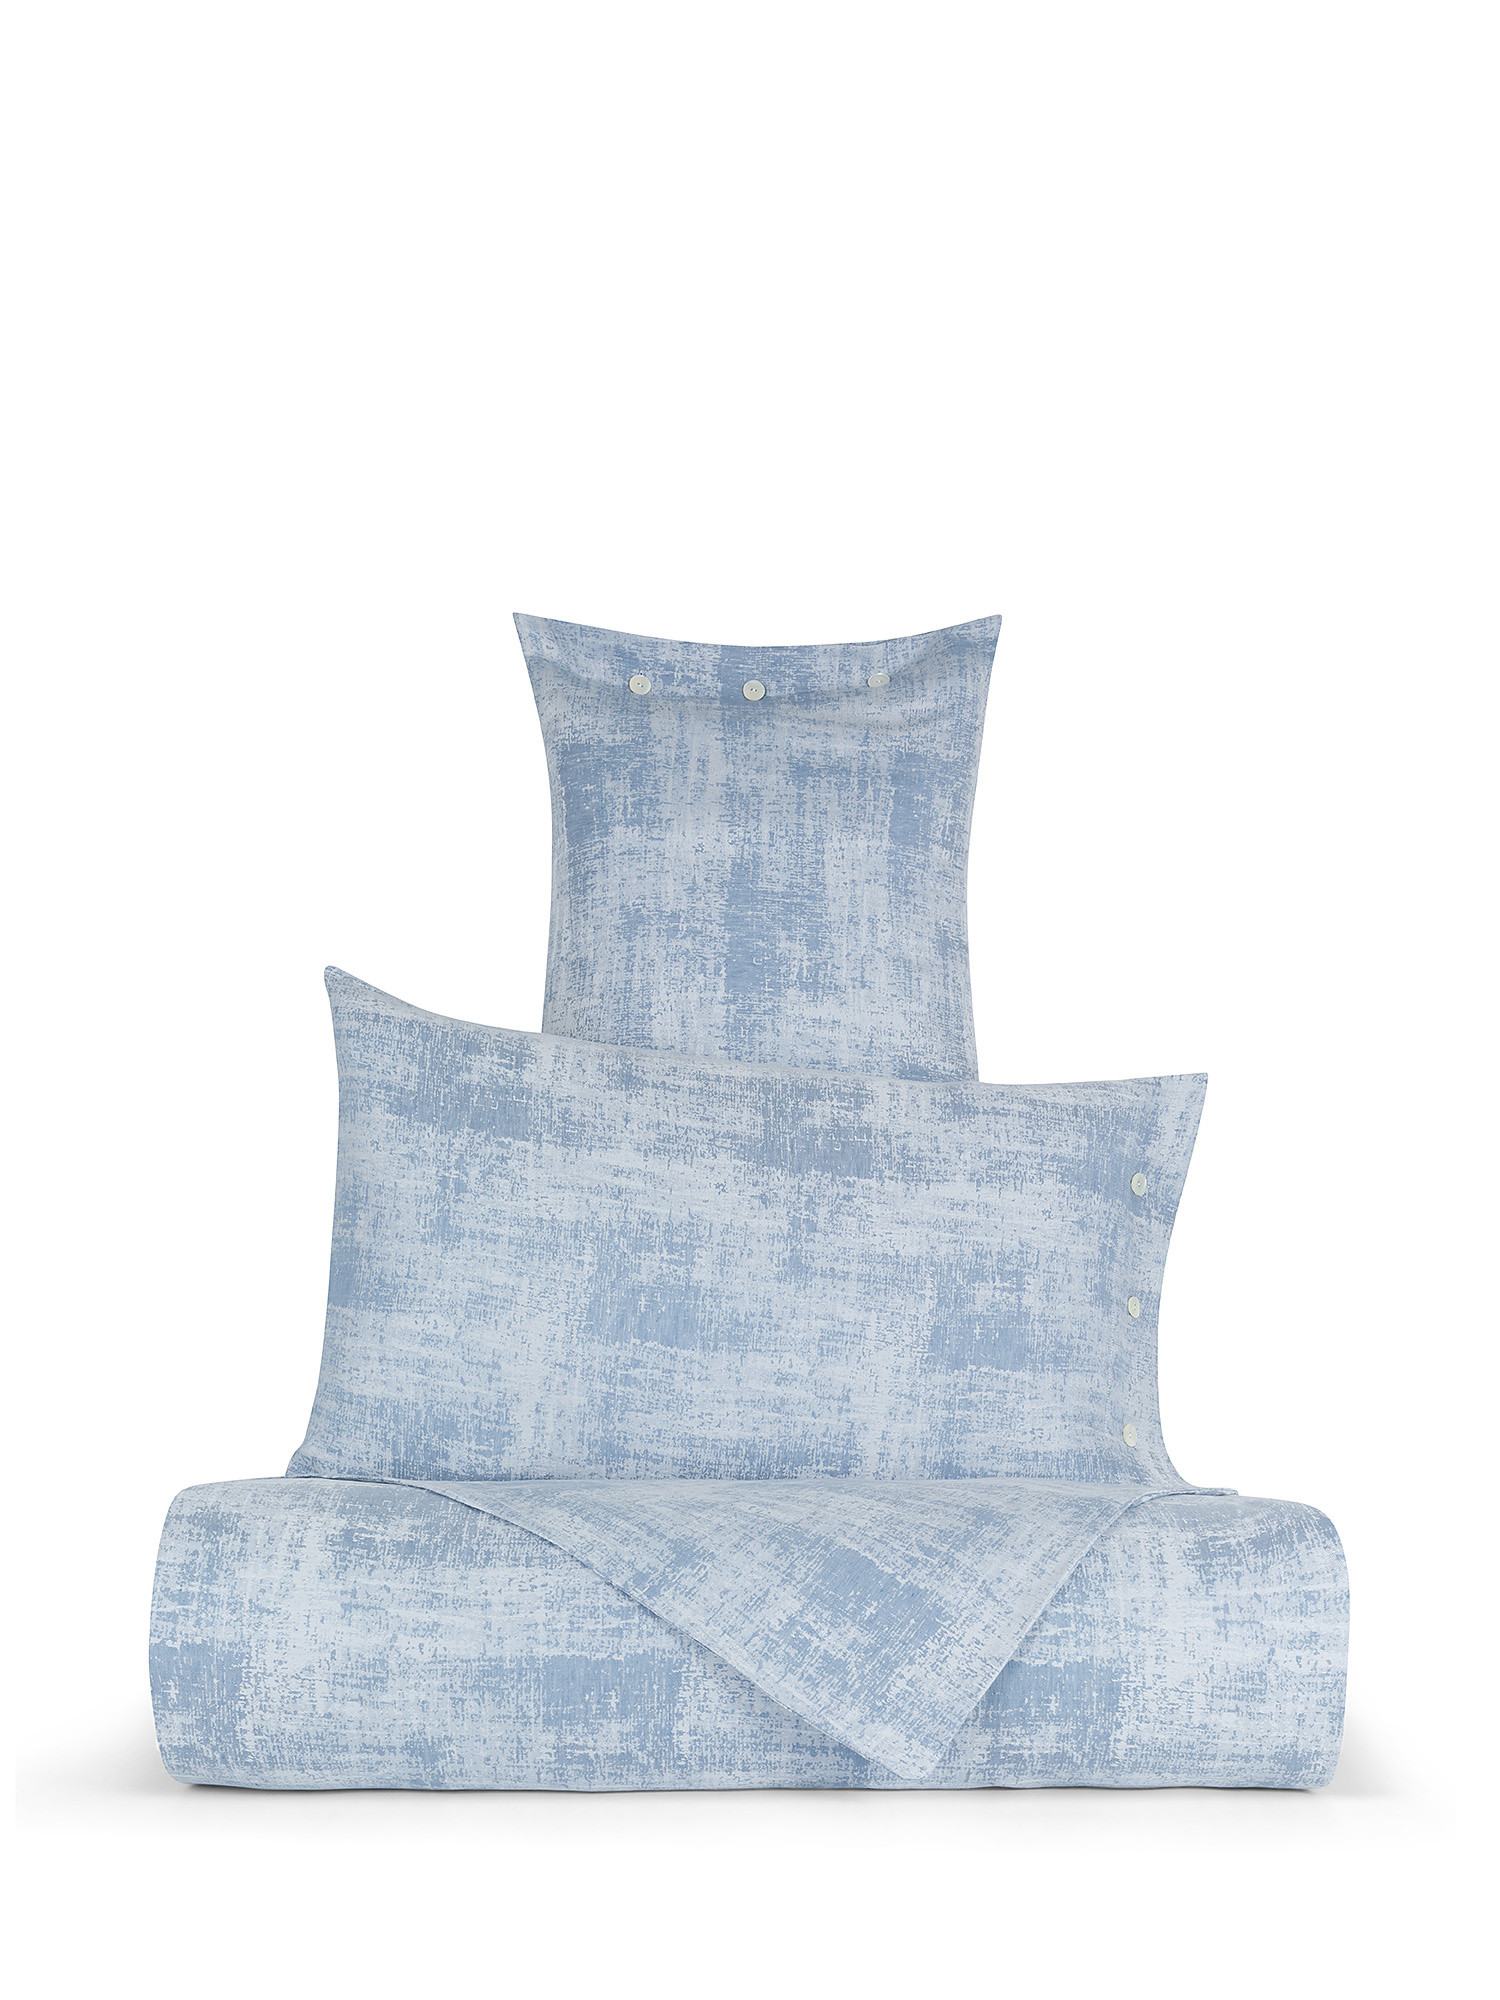 Denim effect washed linen blend pillowcase, Light Blue, large image number 1